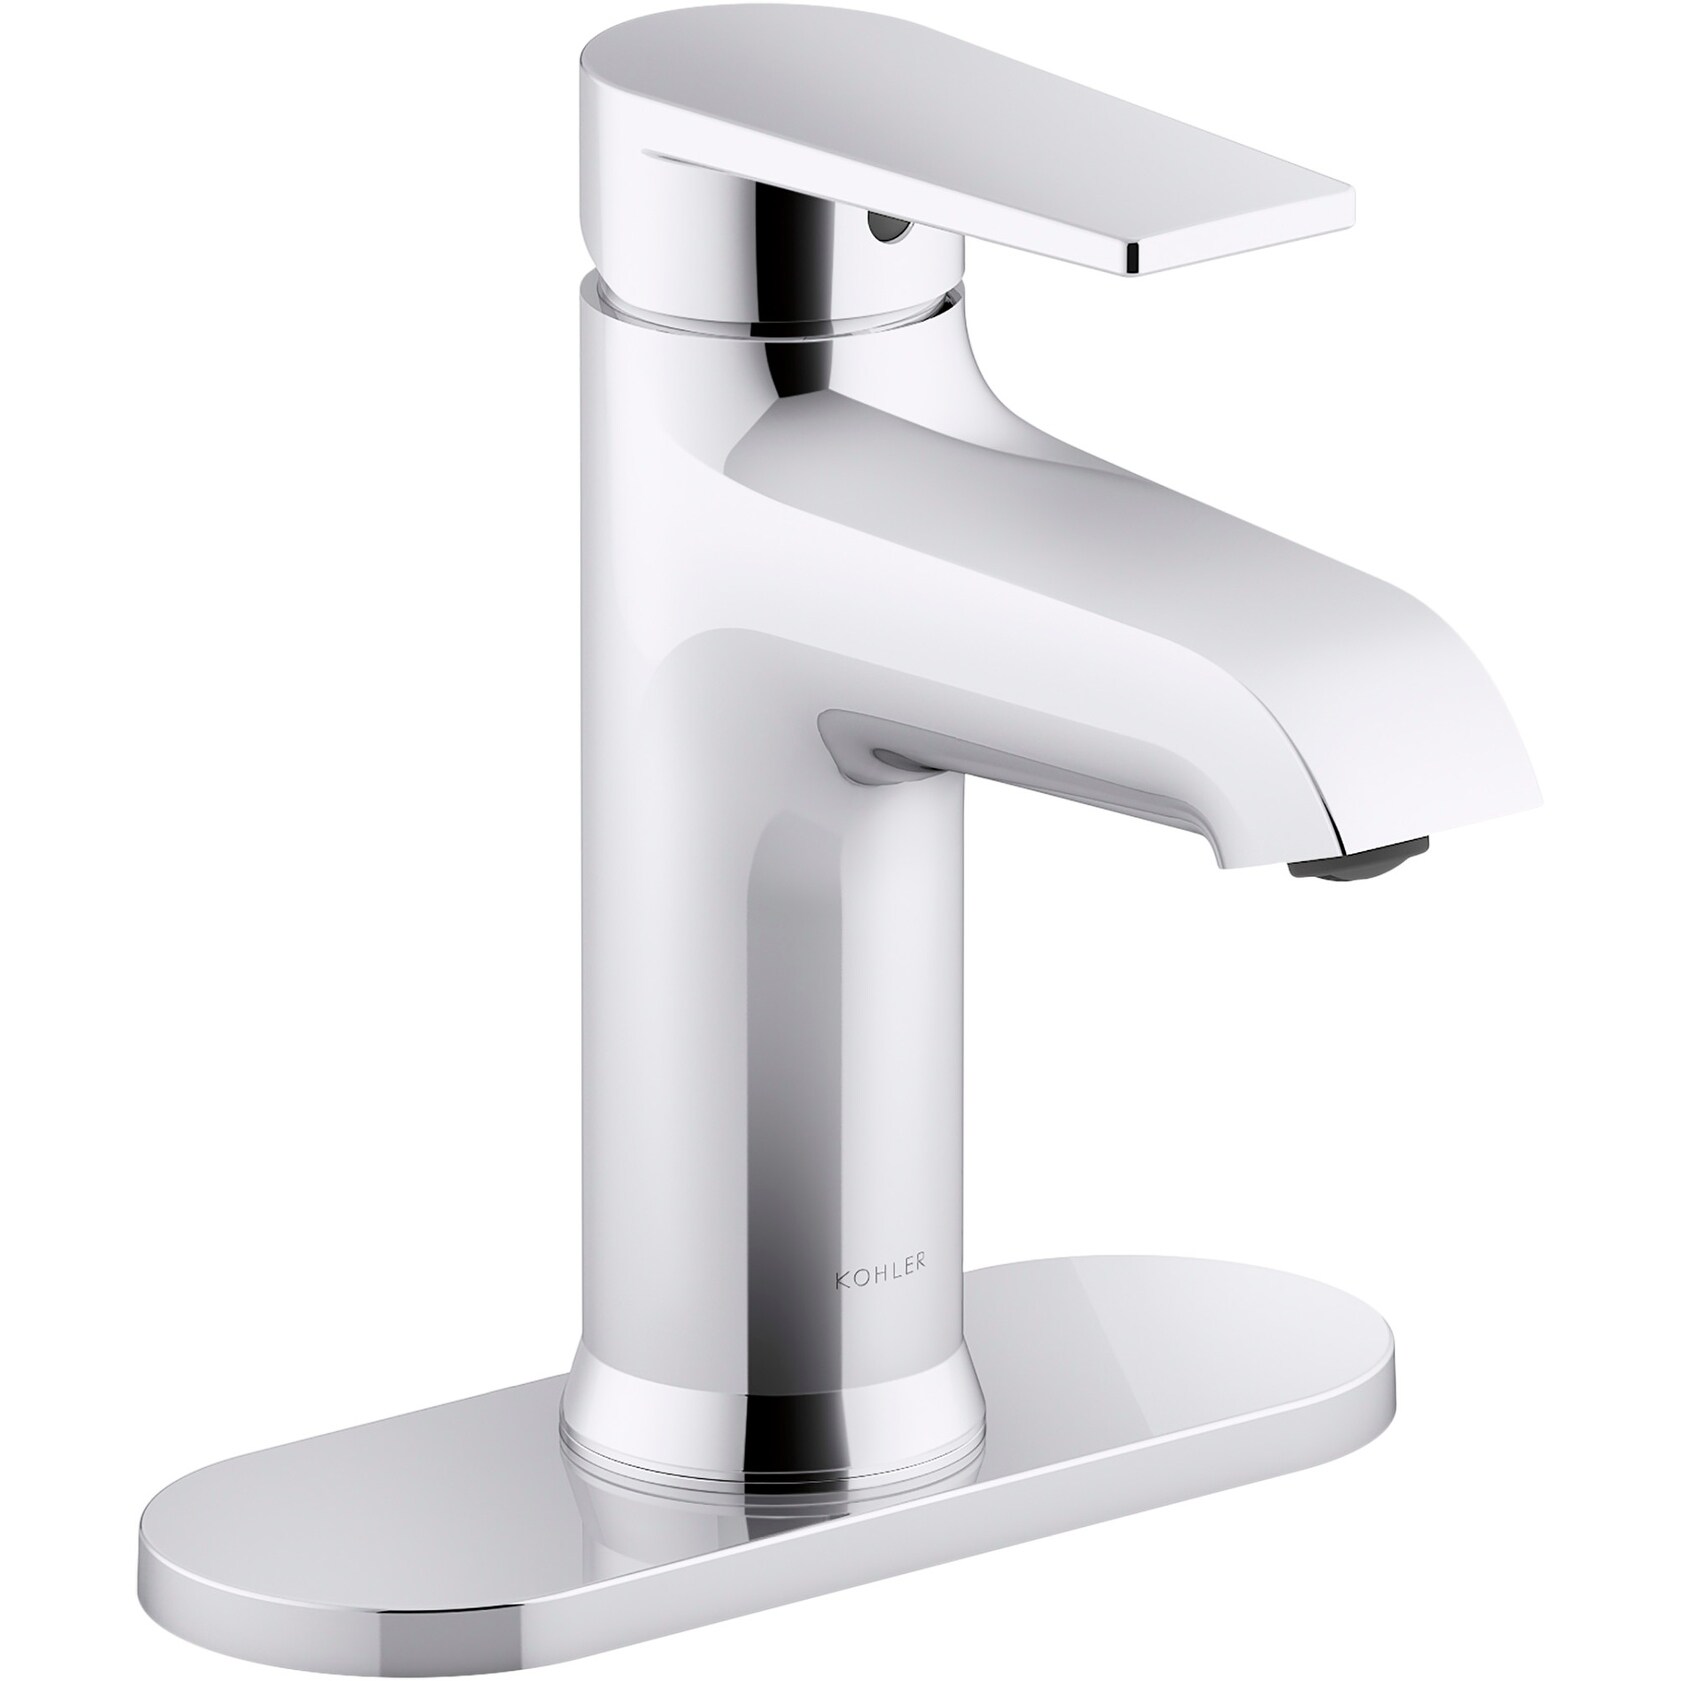 Kohler Lavatory Transitional Faucet Chrome Single Includes Drain & Escutcheon 